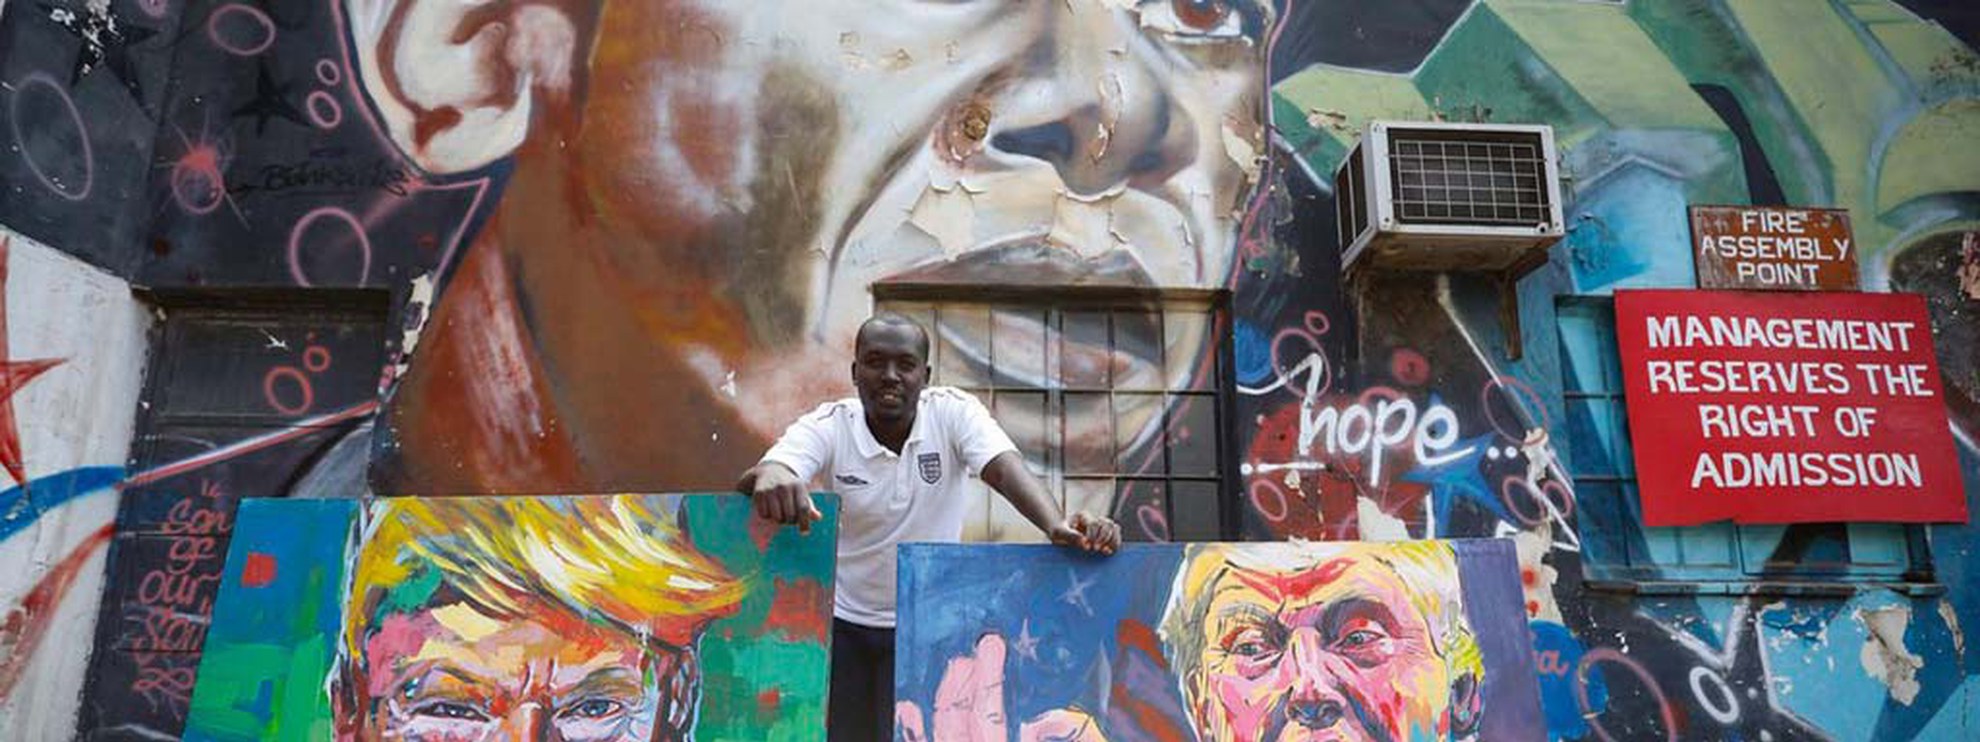 Der kenianische Künstler 'Yegonizer' mit seinen Bildern von Trump vor einem Obama-Wandbild des Künstlers Bankslave. © Keystone/EPA/DAI KUROKAWA